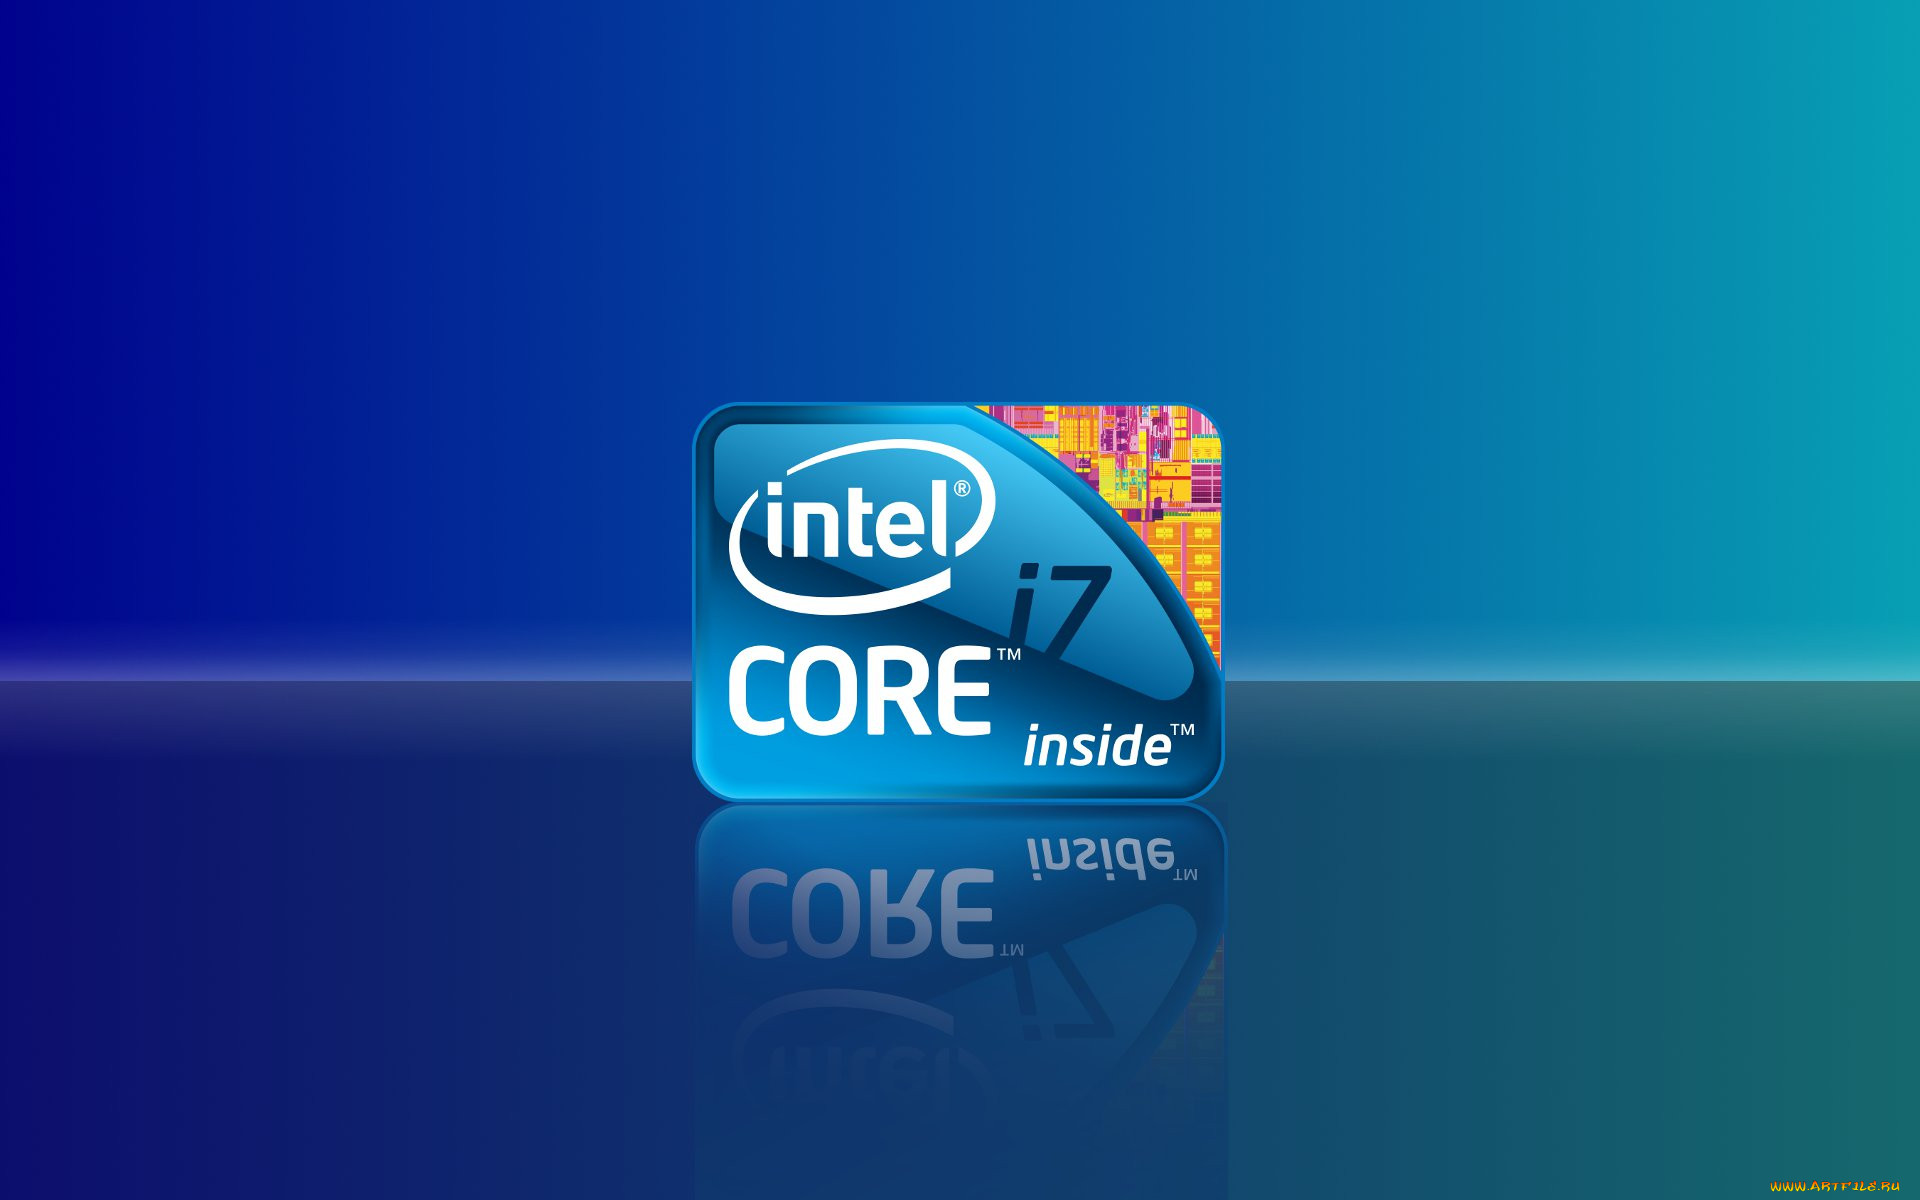 Intel com. Intel Core i7 икон. Intel Core i7 inside. Intel inside Core i7 logo. Фон Интел.